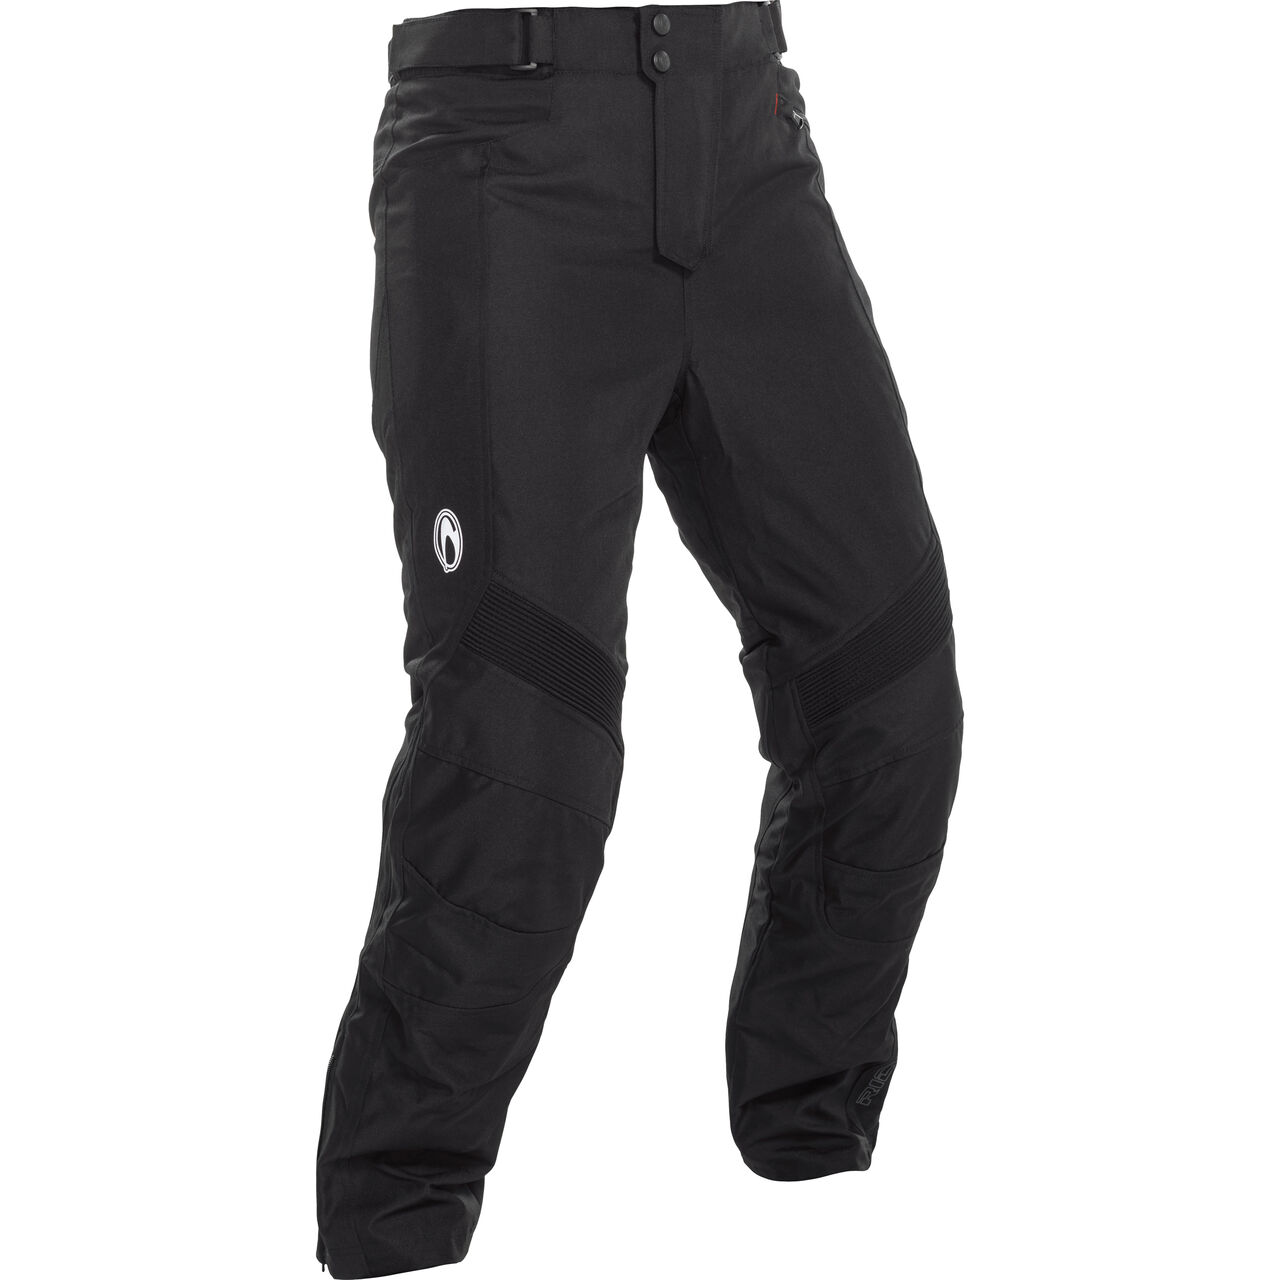 Denver Textile Pants black L (short)